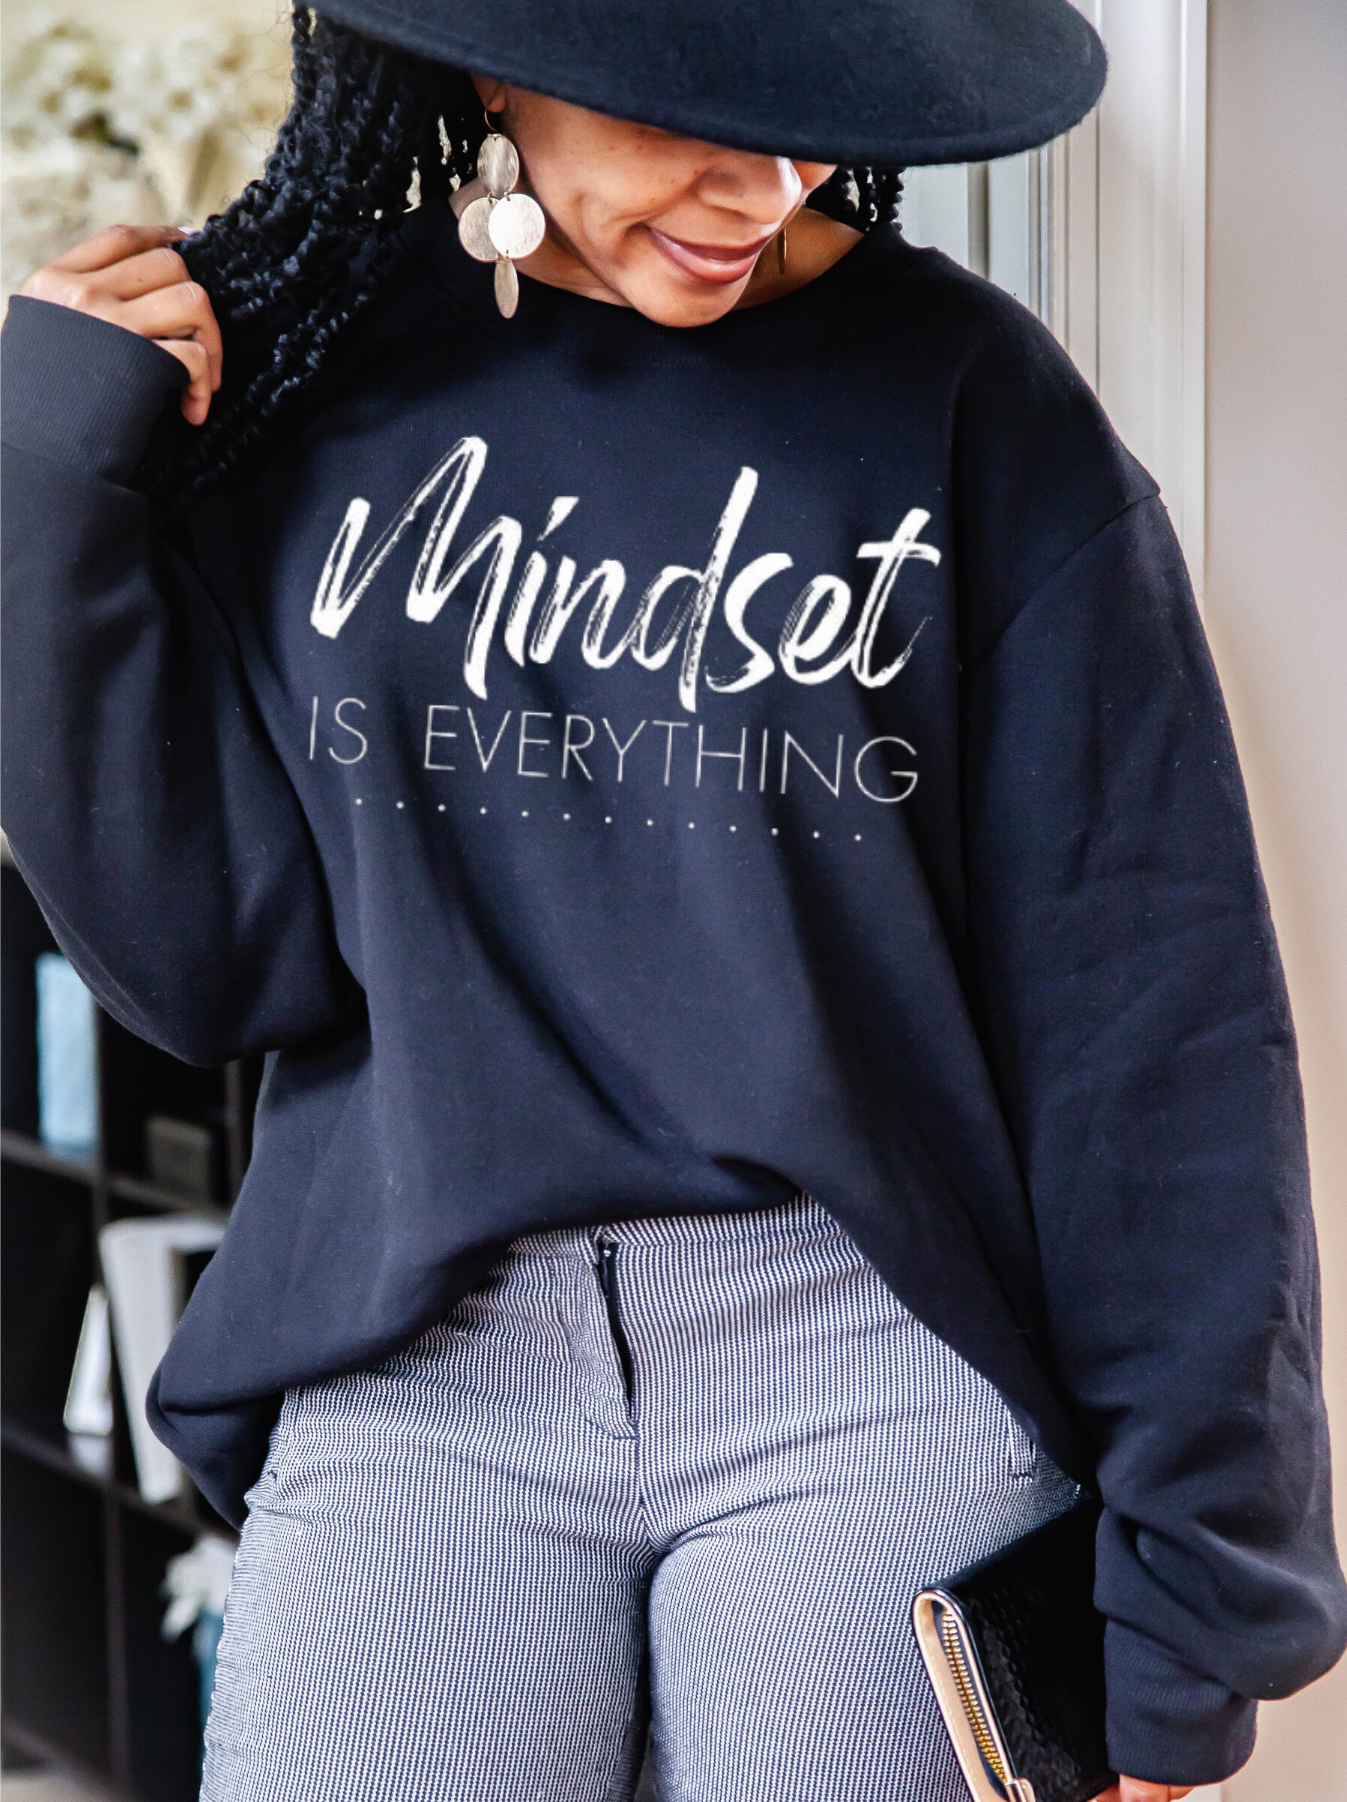 Mindset is everything Sweatshirt